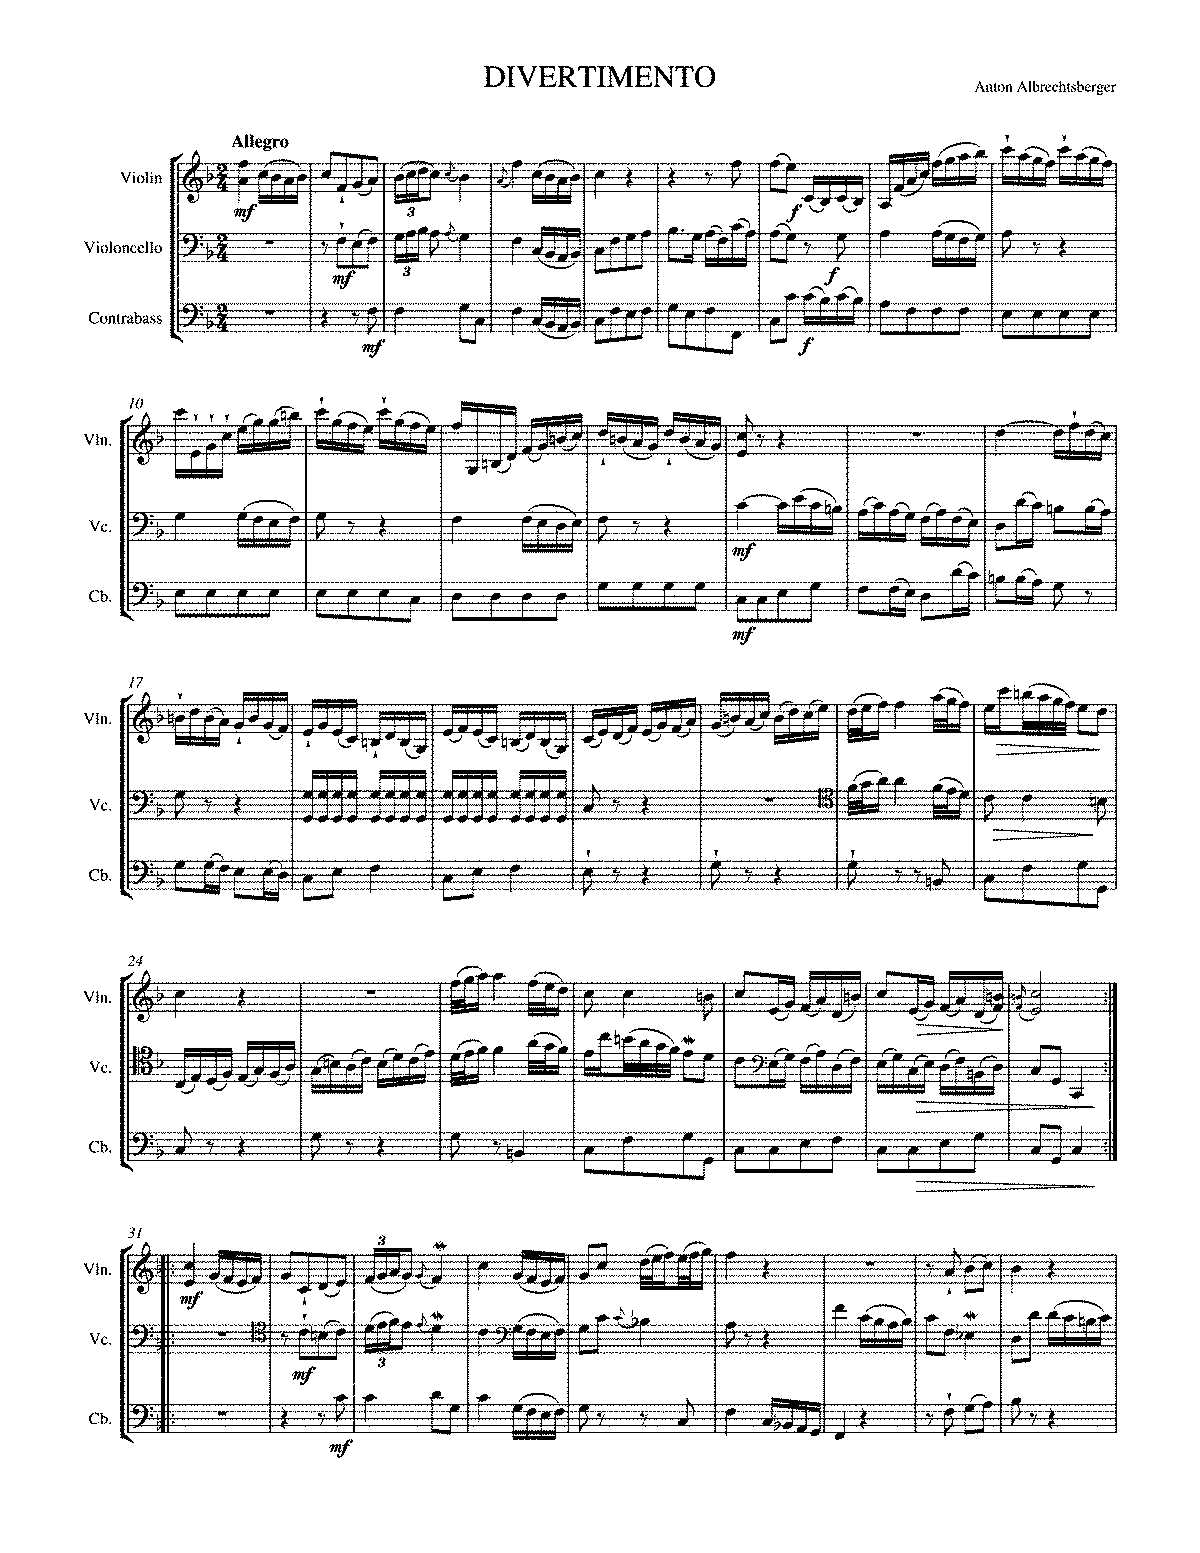 Divertimento in F major (Albrechtsberger, Johann Georg) - IMSLP